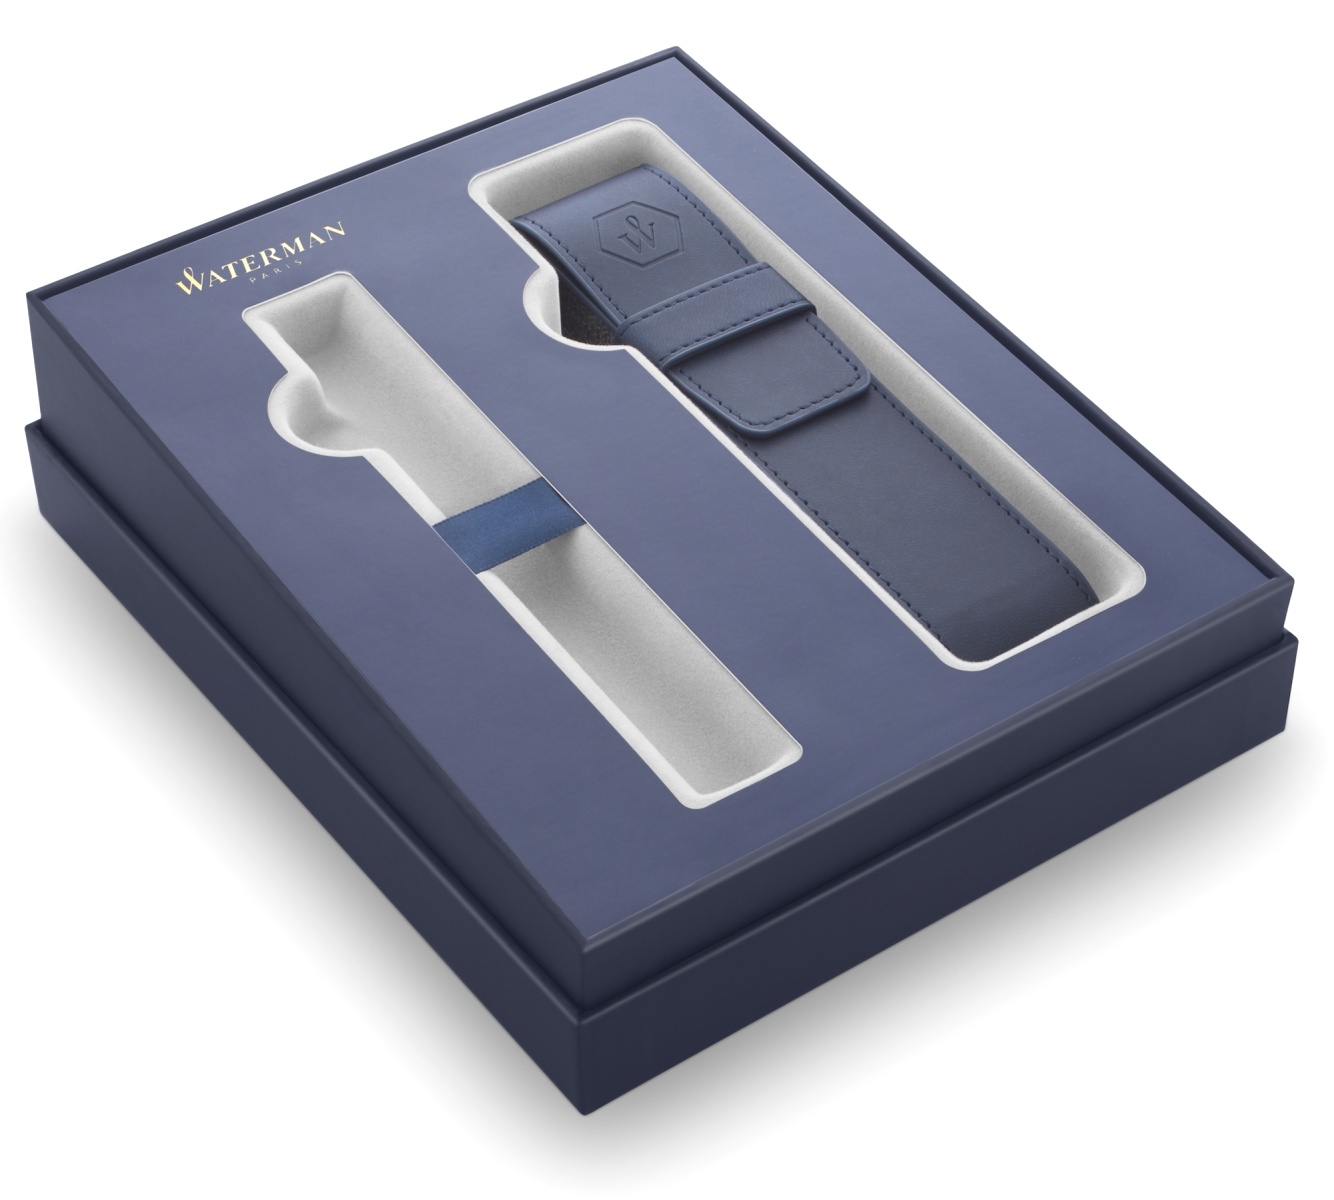  Подарочная коробка с чехлом Waterman 2020 из искусственной кожи и местом для ручки